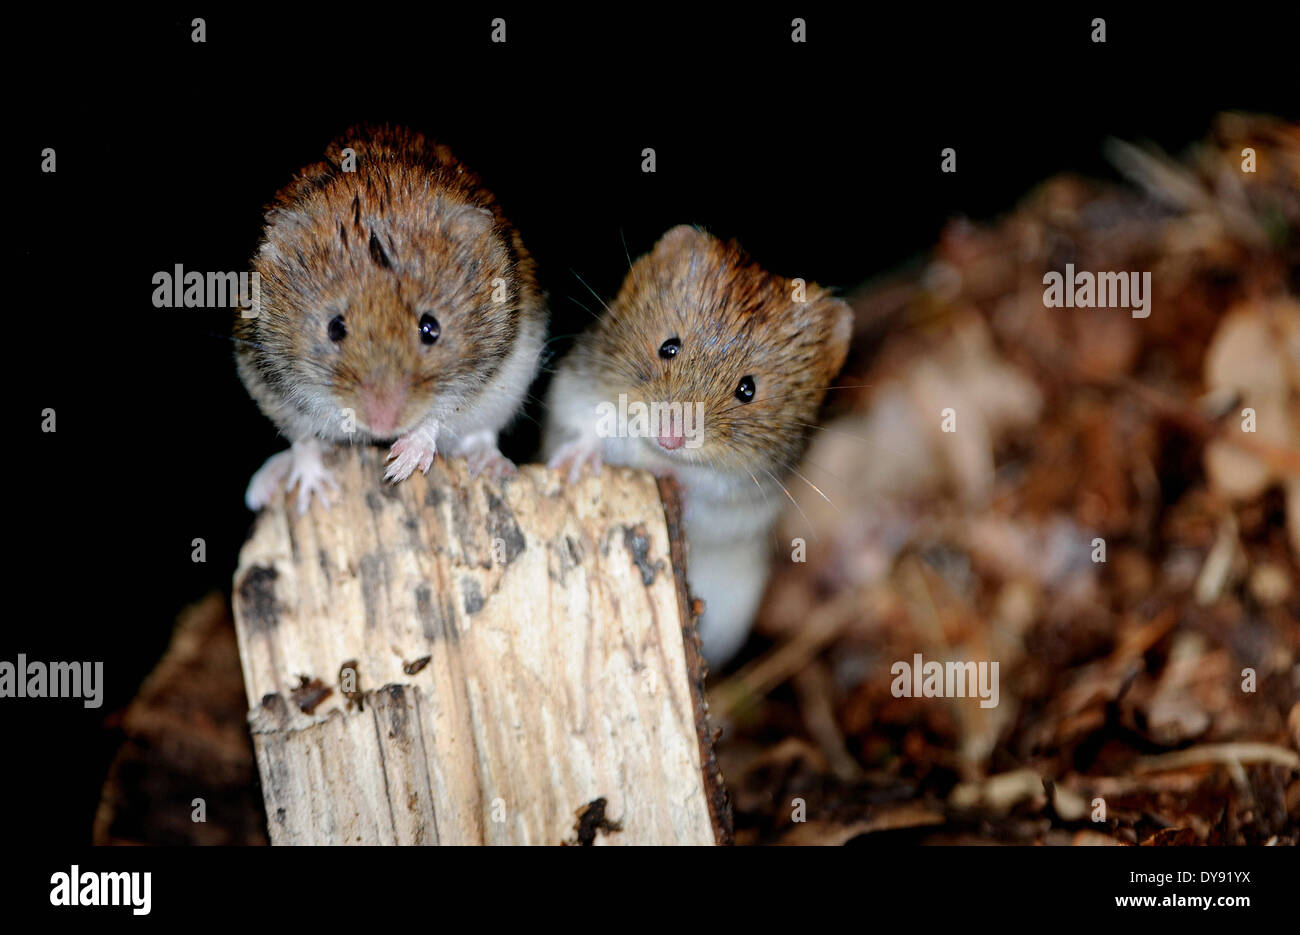 Bank vole invernale terreno forestale Myodes glareolus mouse VERTEBRATI MAMMIFERI topi topi di campo arvicole muroids banca cricetids arvicole, Foto Stock